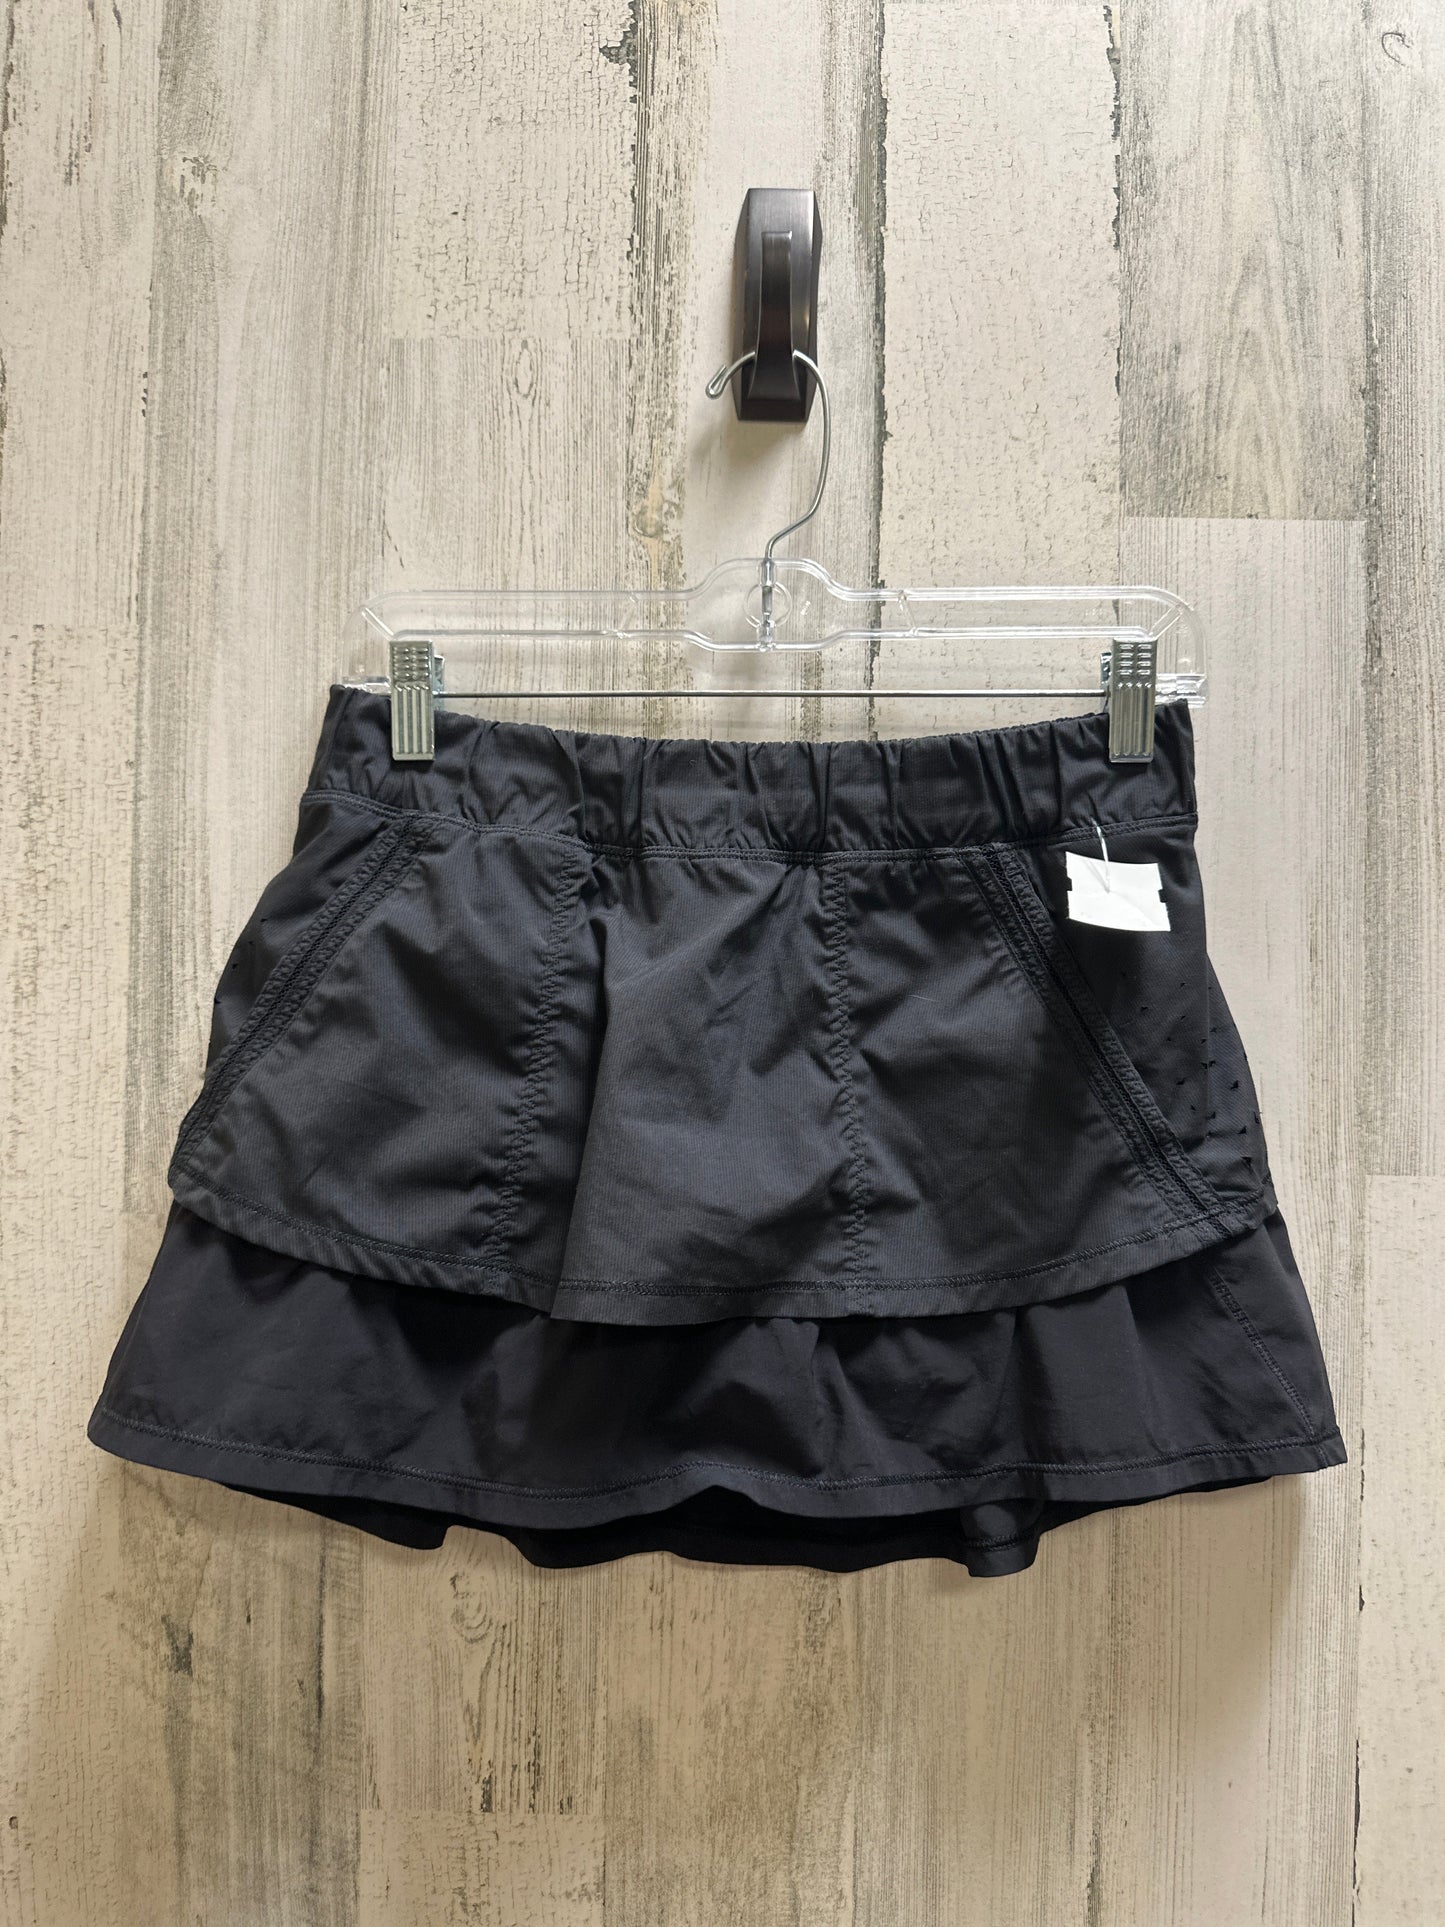 Black Athletic Skirt Lululemon, Size 6